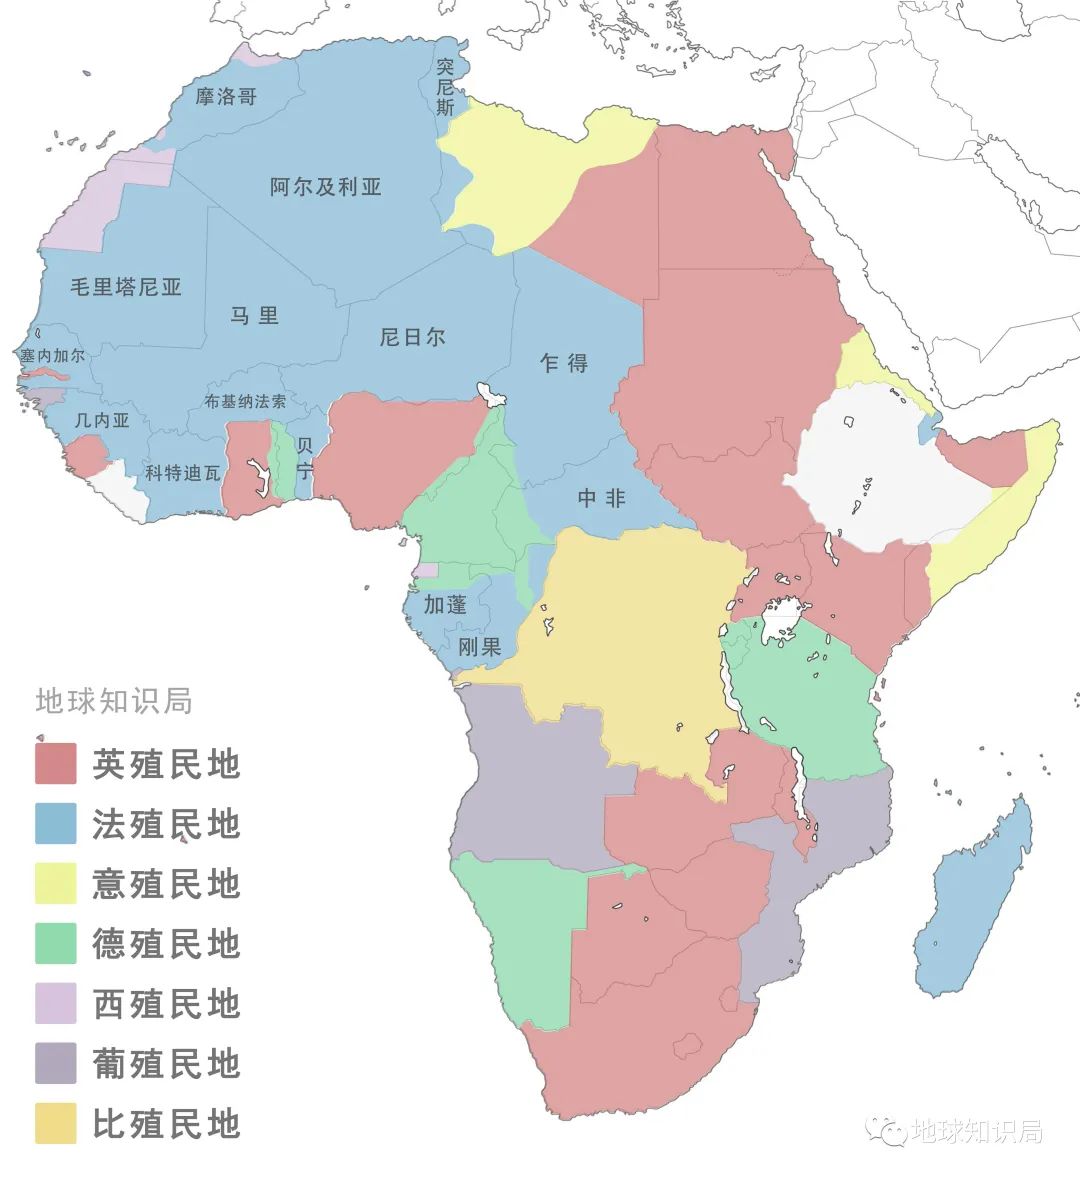 法国影响力仍举足轻重法国在非洲曾有广阔的殖民地(尤其西非,北非)这